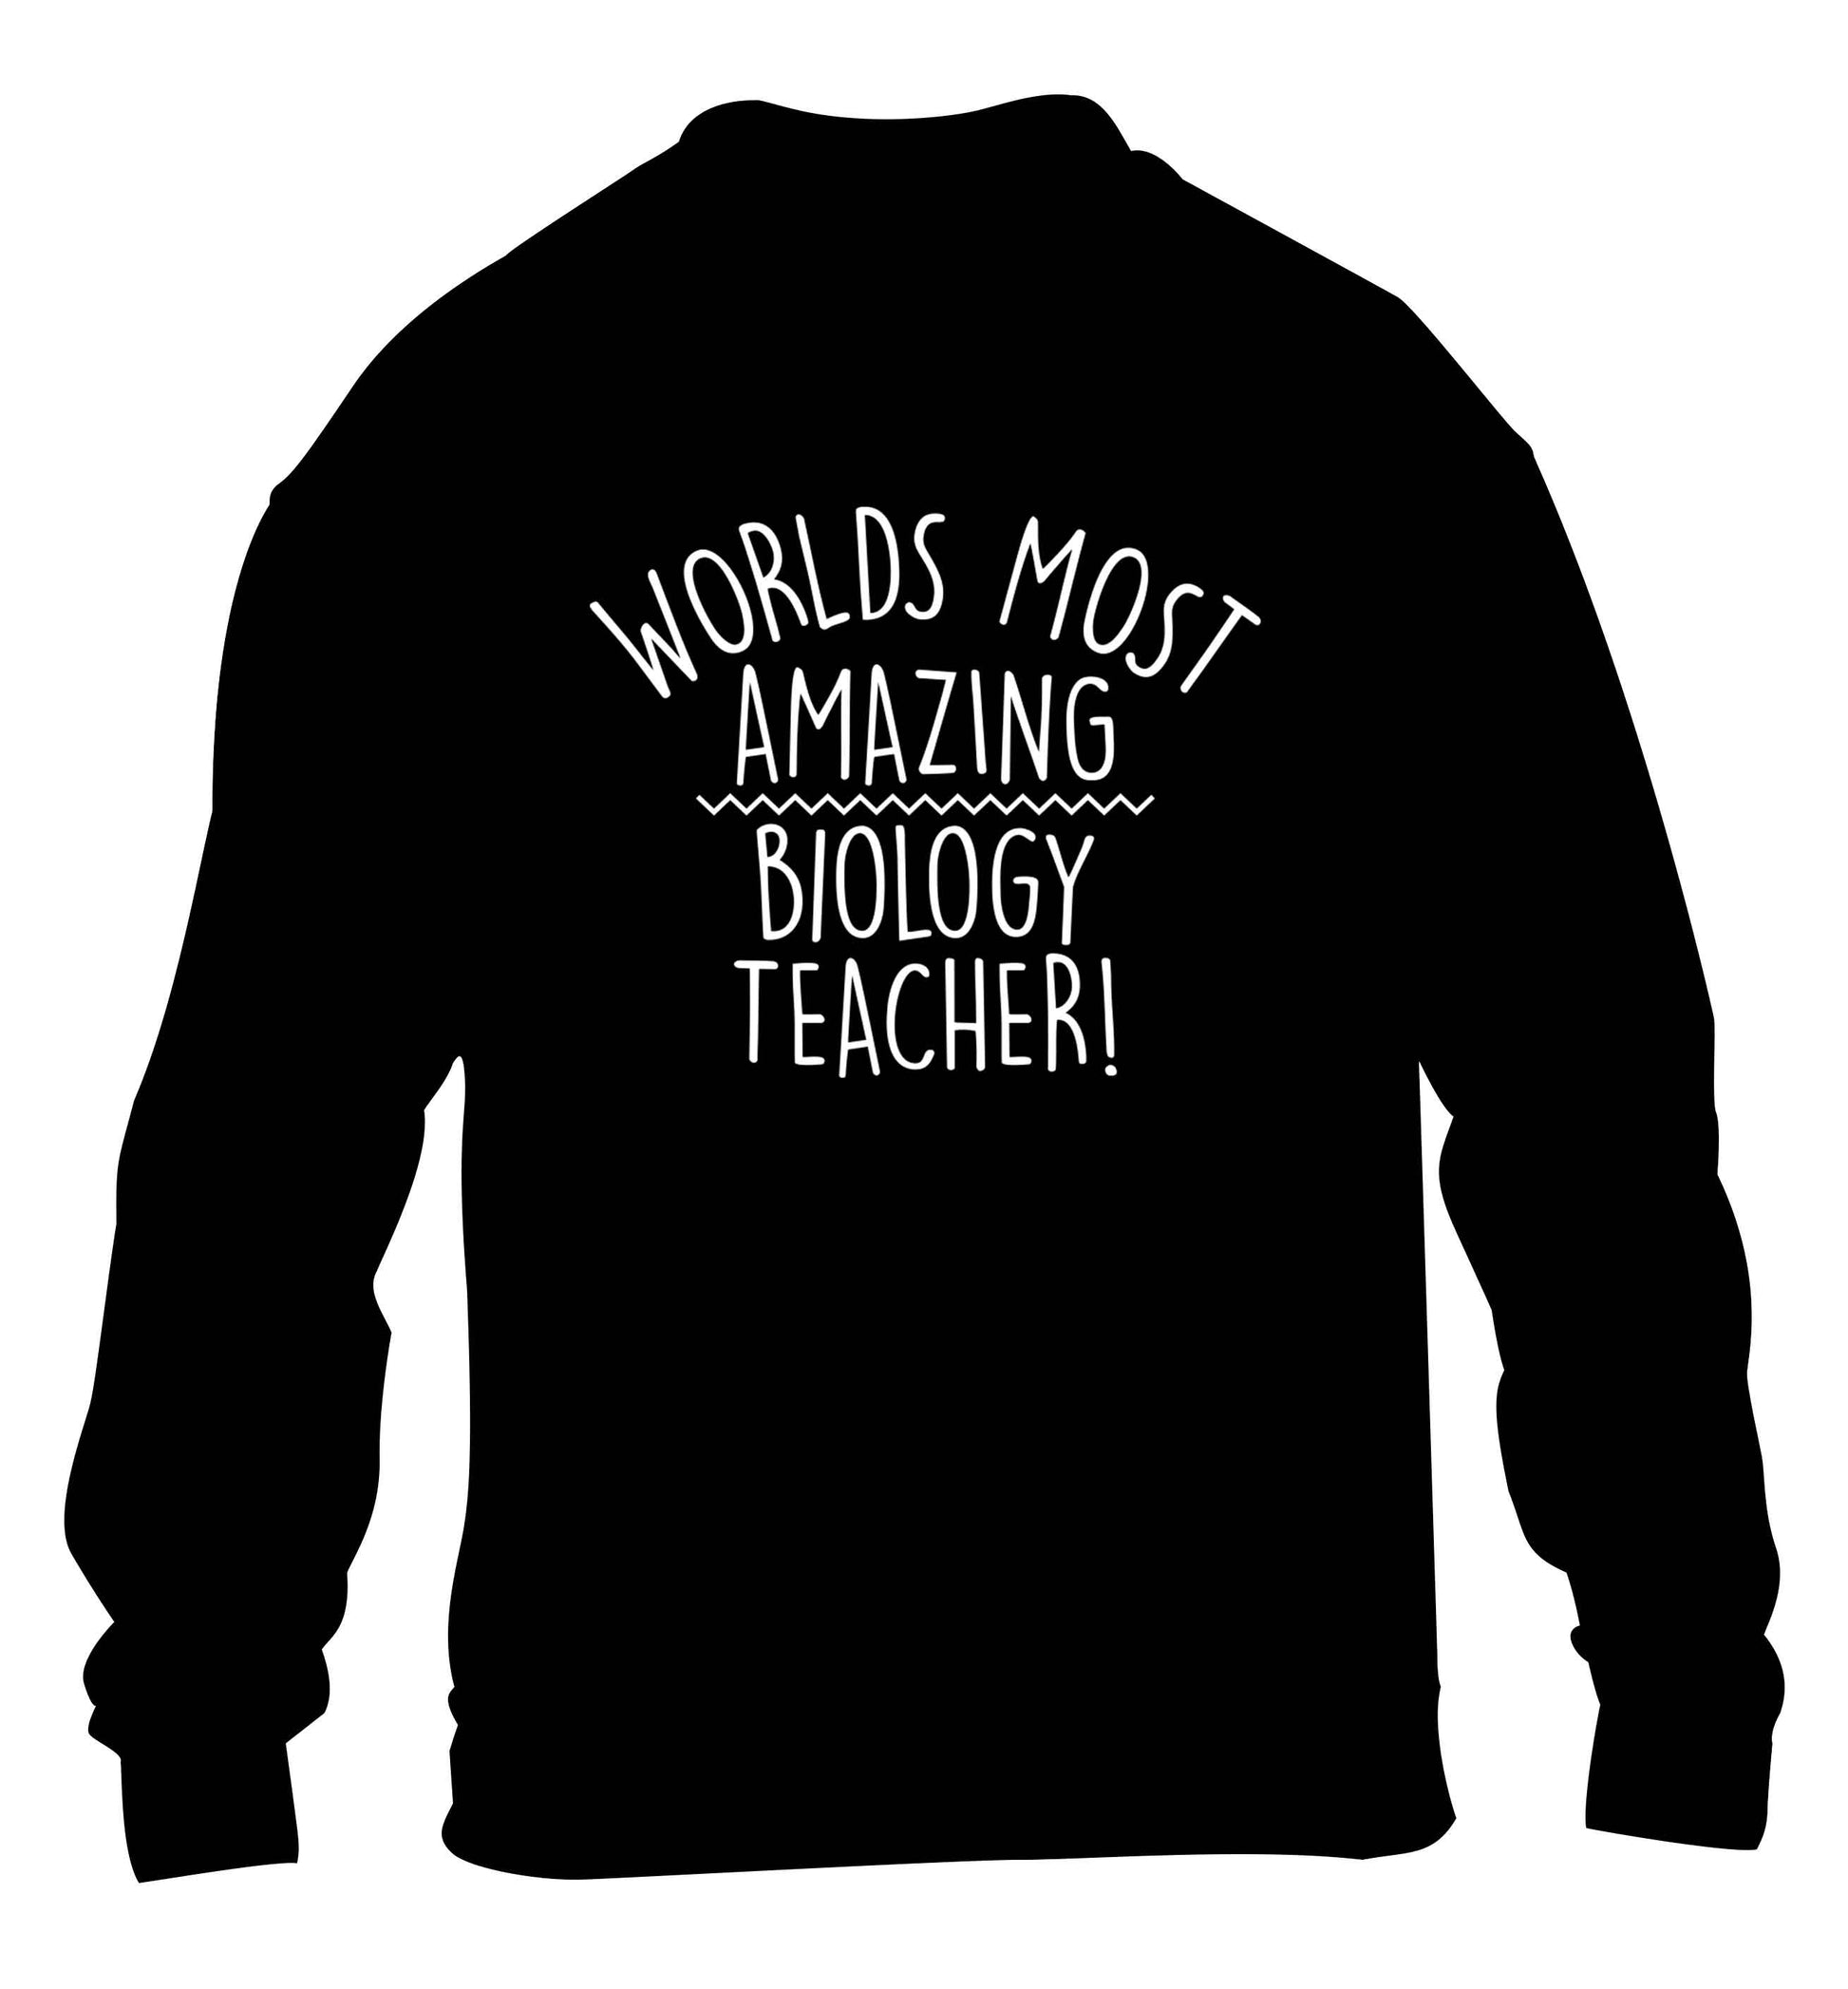 Worlds most amazing biology teacher children's black sweater 12-13 Years